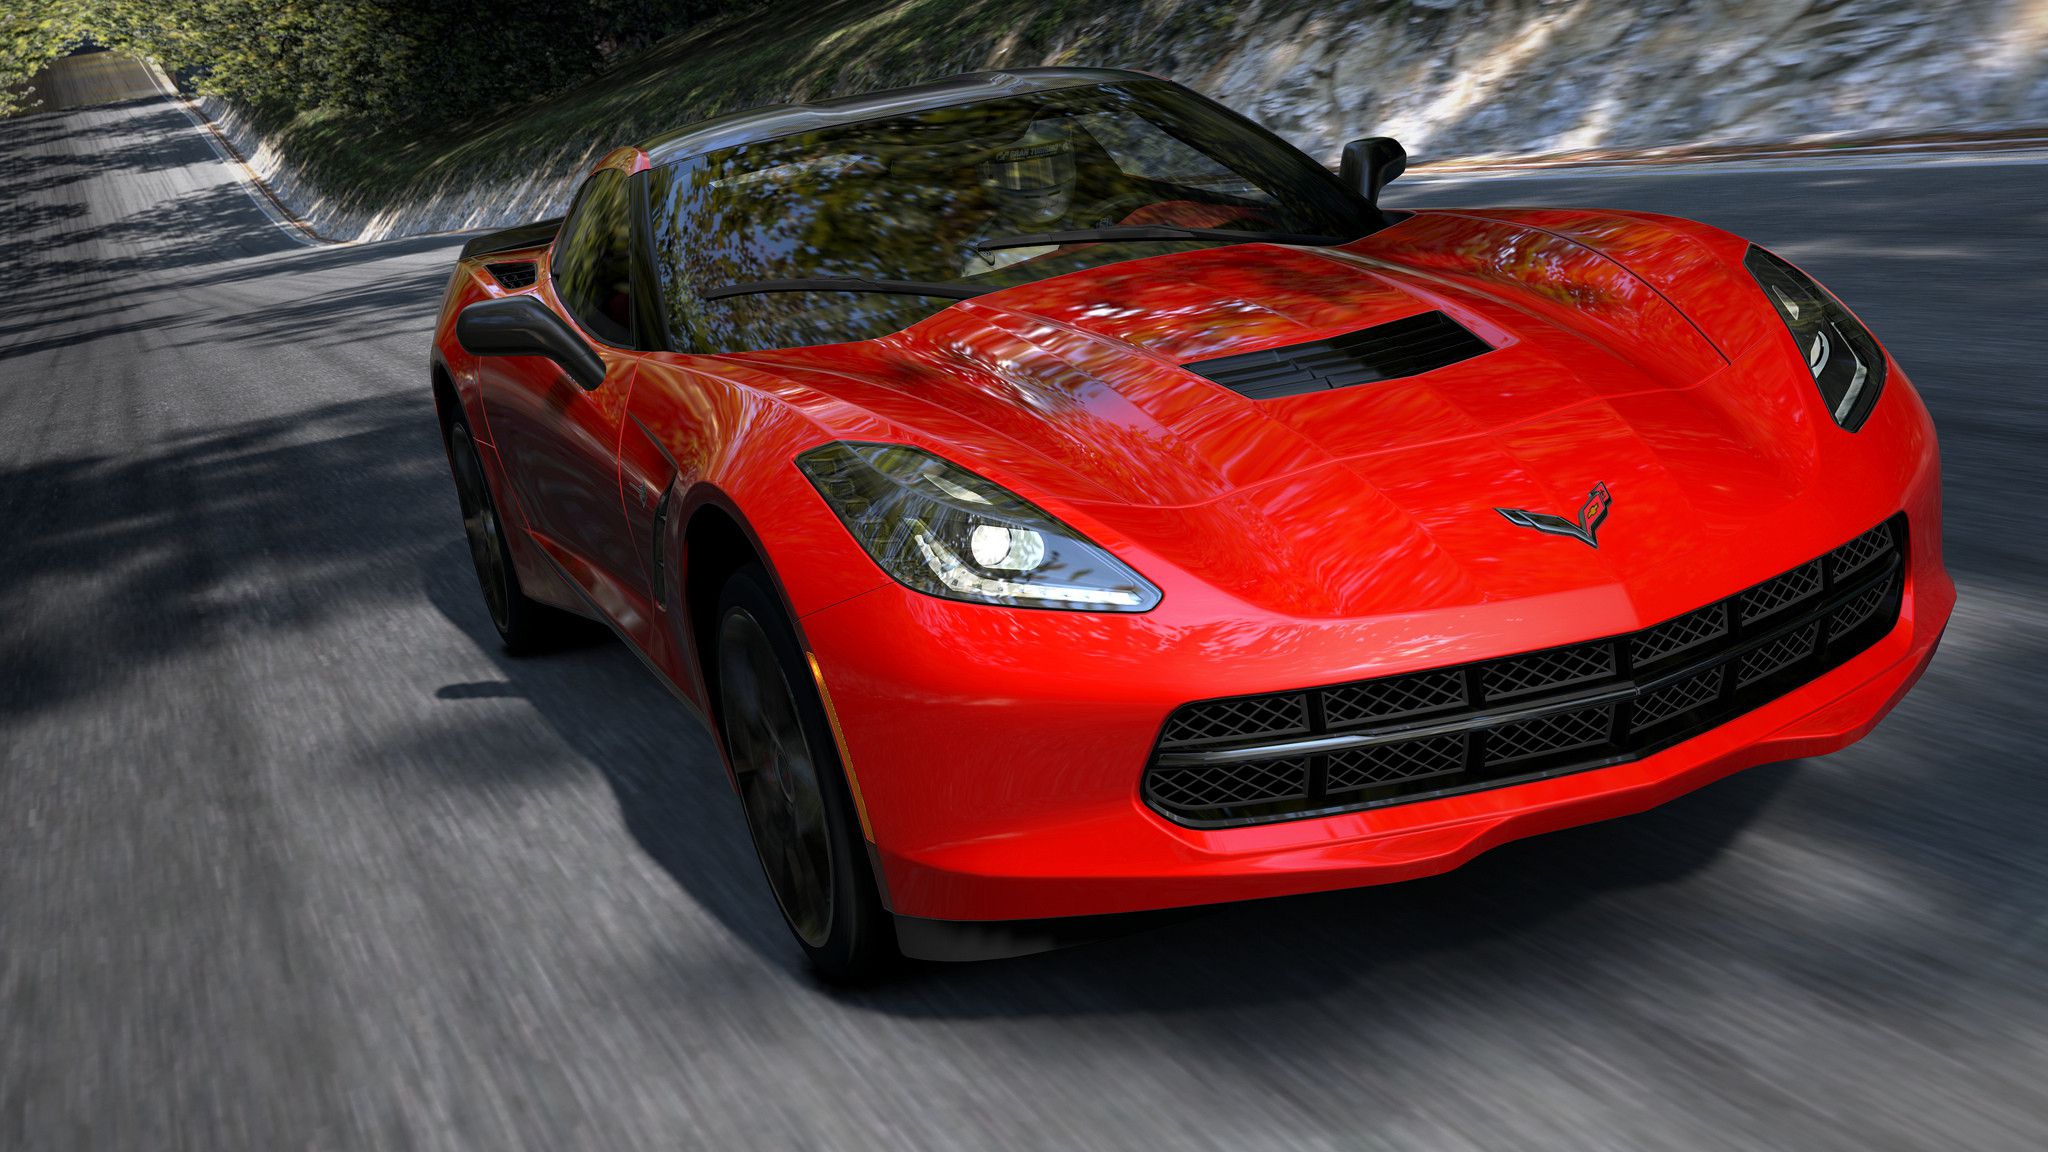 Gran Turismo 5 - 2014 Corvette Stingray - 5